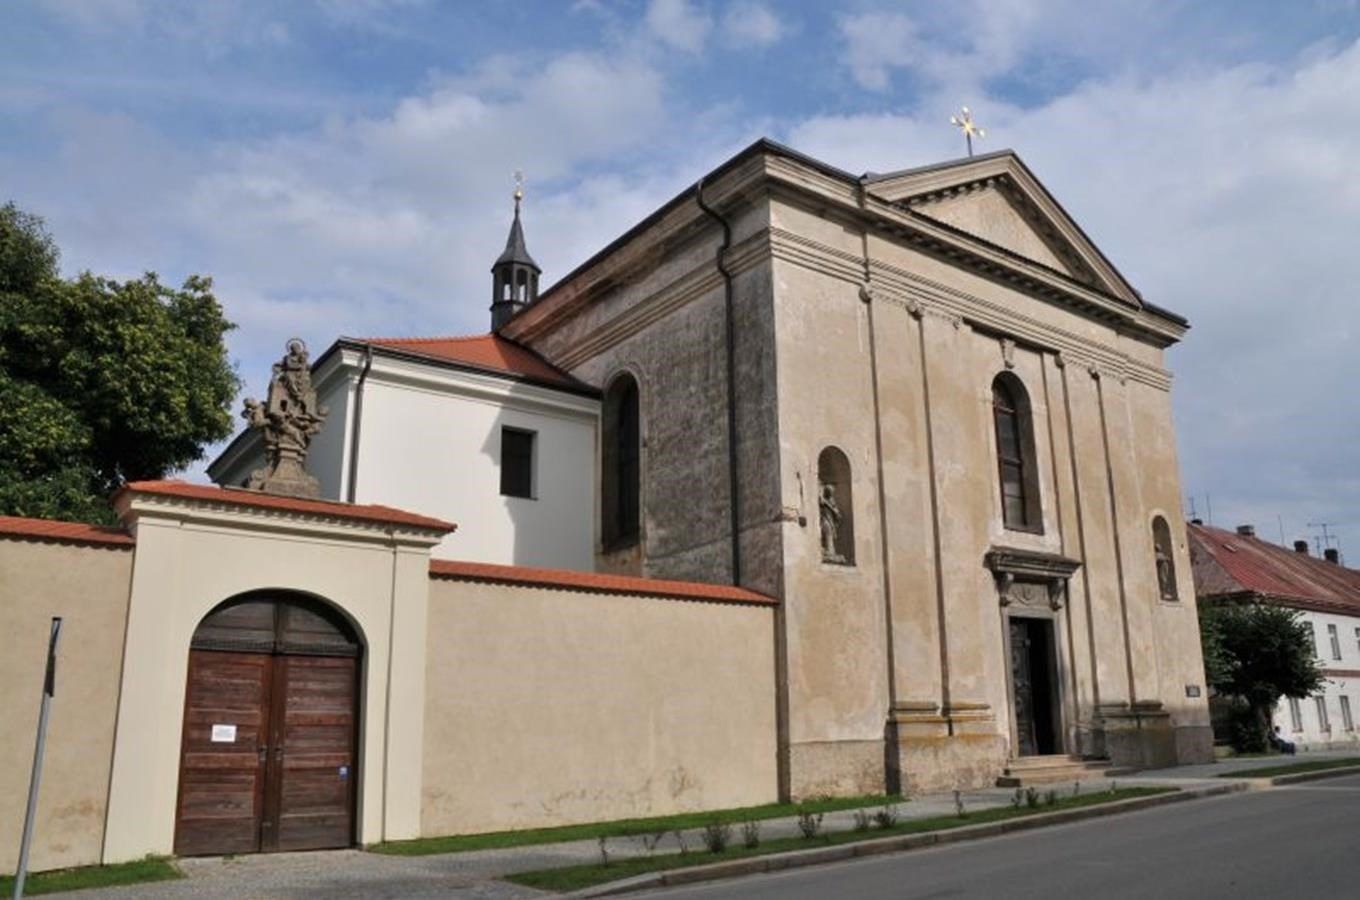 Empírový kostel sv. Františka Serafínského v v Golčově Jeníkově